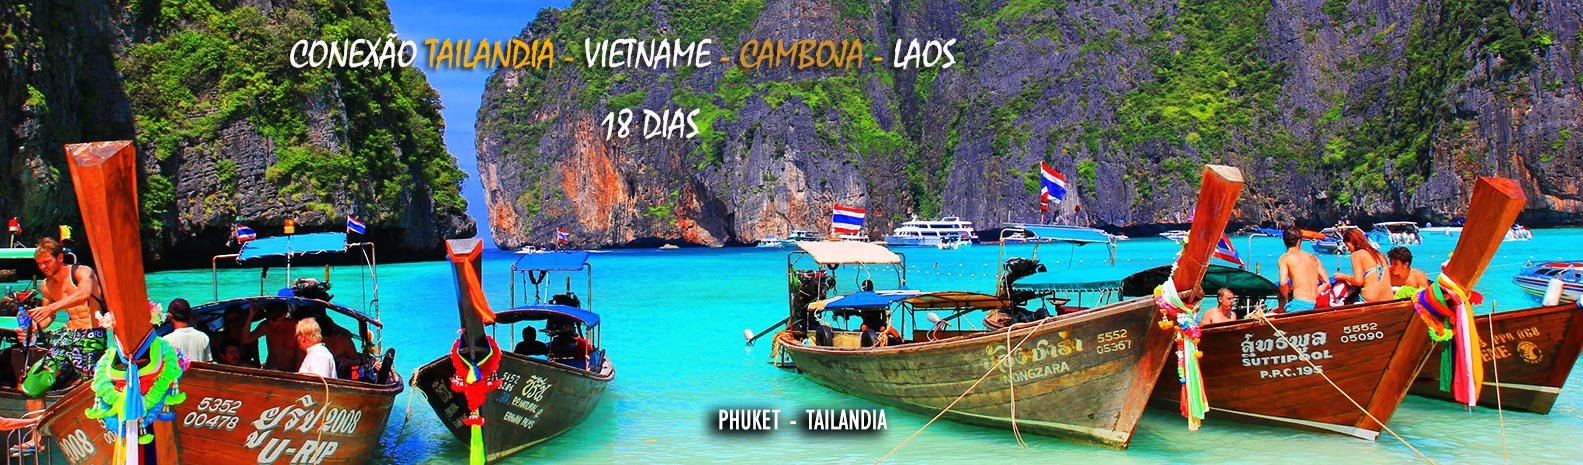 Coneção do Vietnã com Laos, Camboja, Tailândia 18